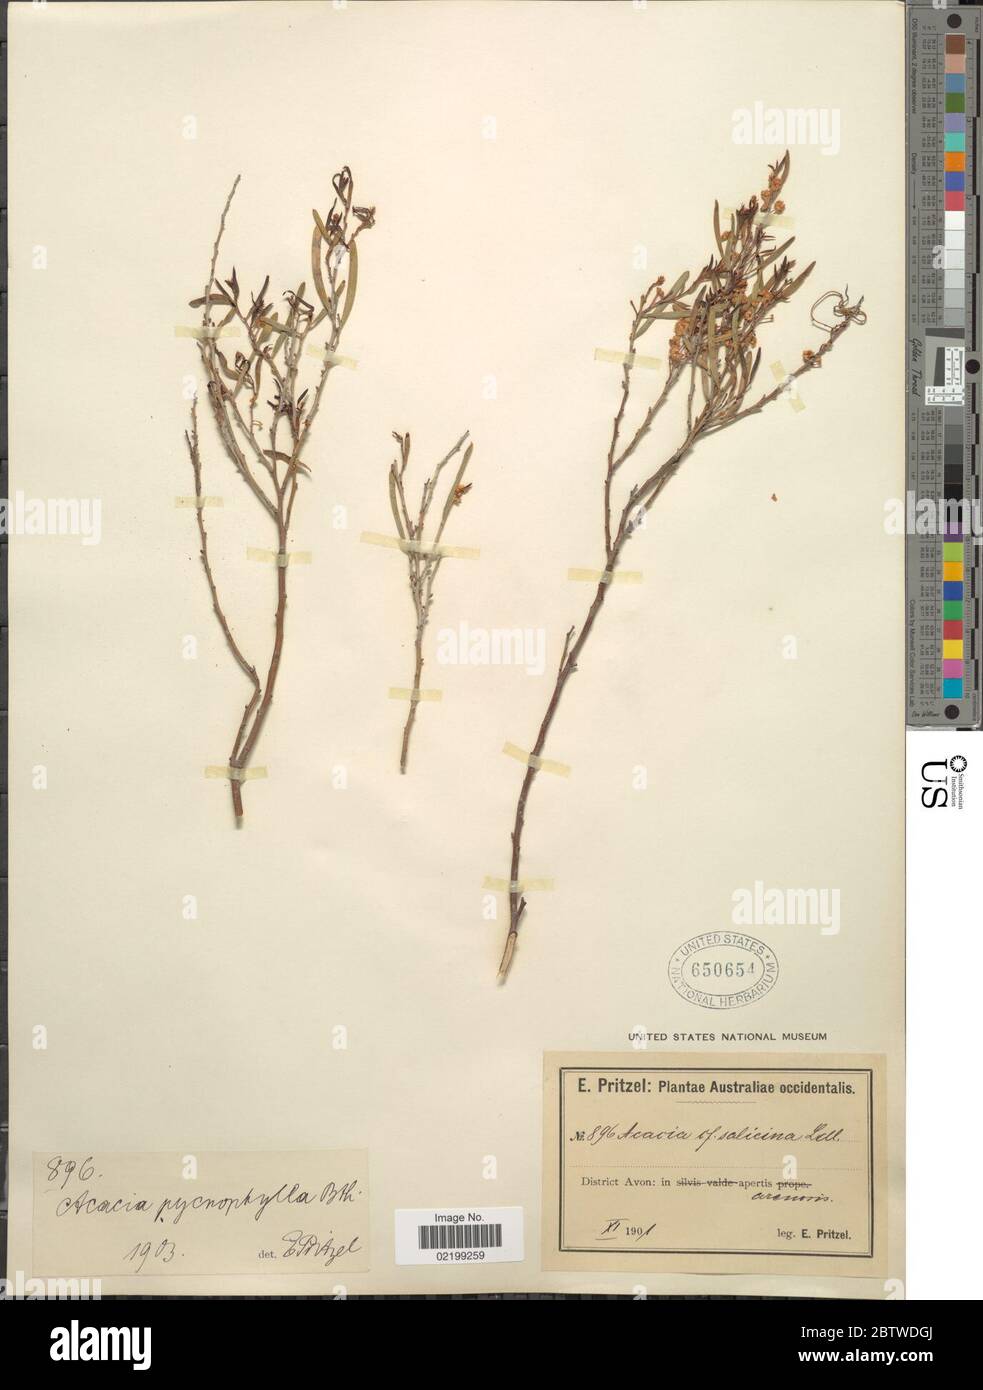 Acacia pycnophylla Benth. Stock Photo